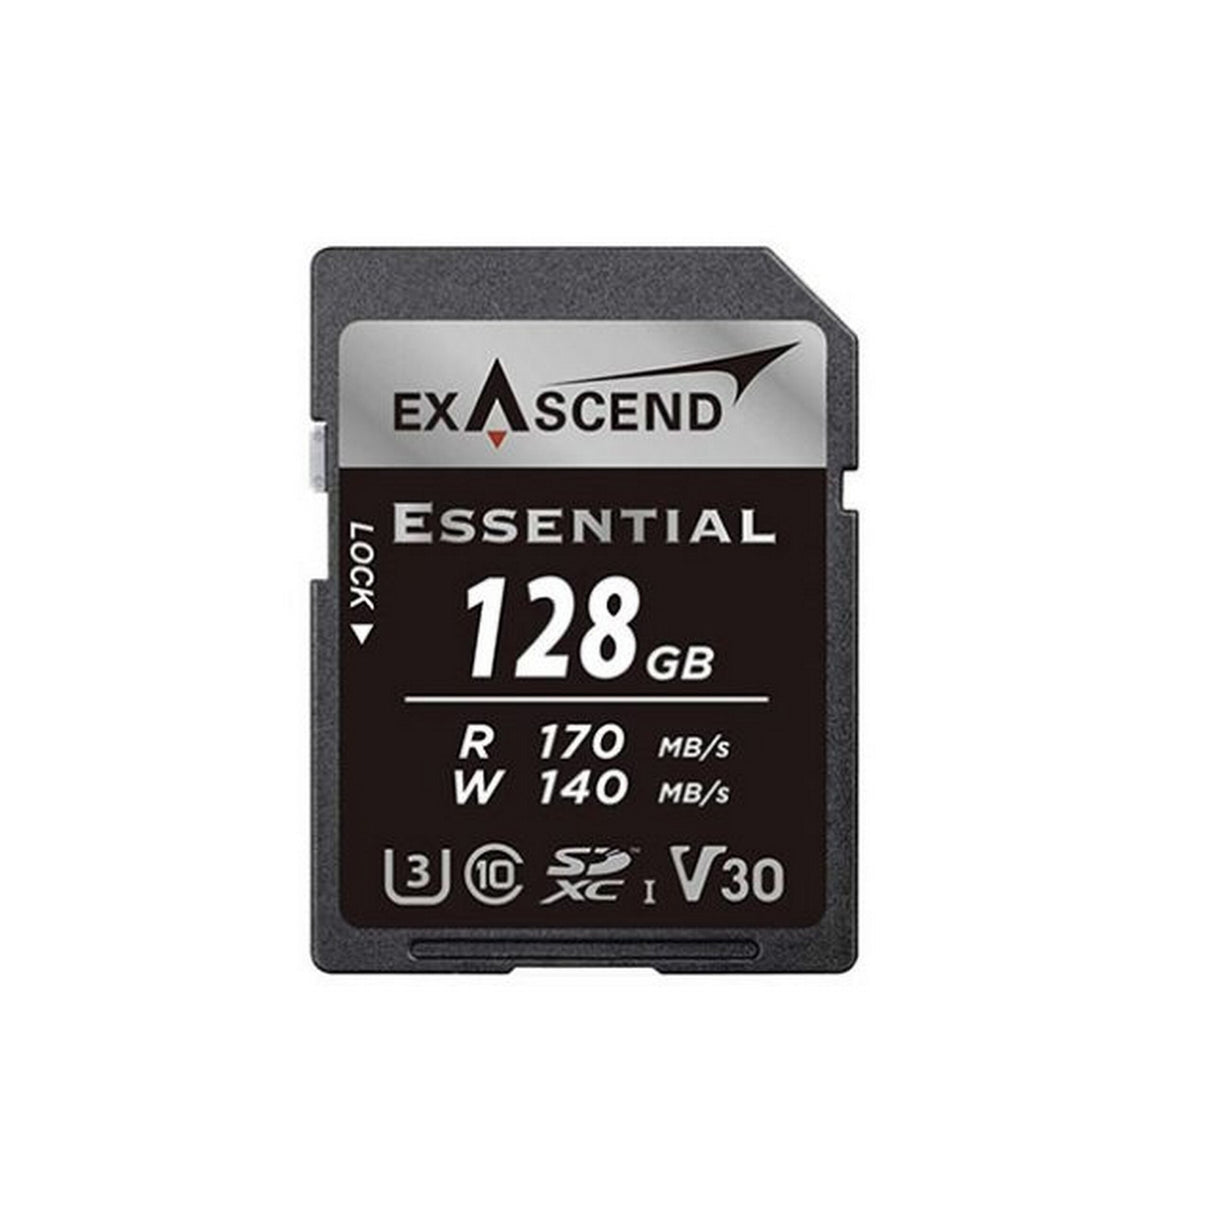 Exascend 128GB Essential SDXC, UHS-I, V30 Memory Card